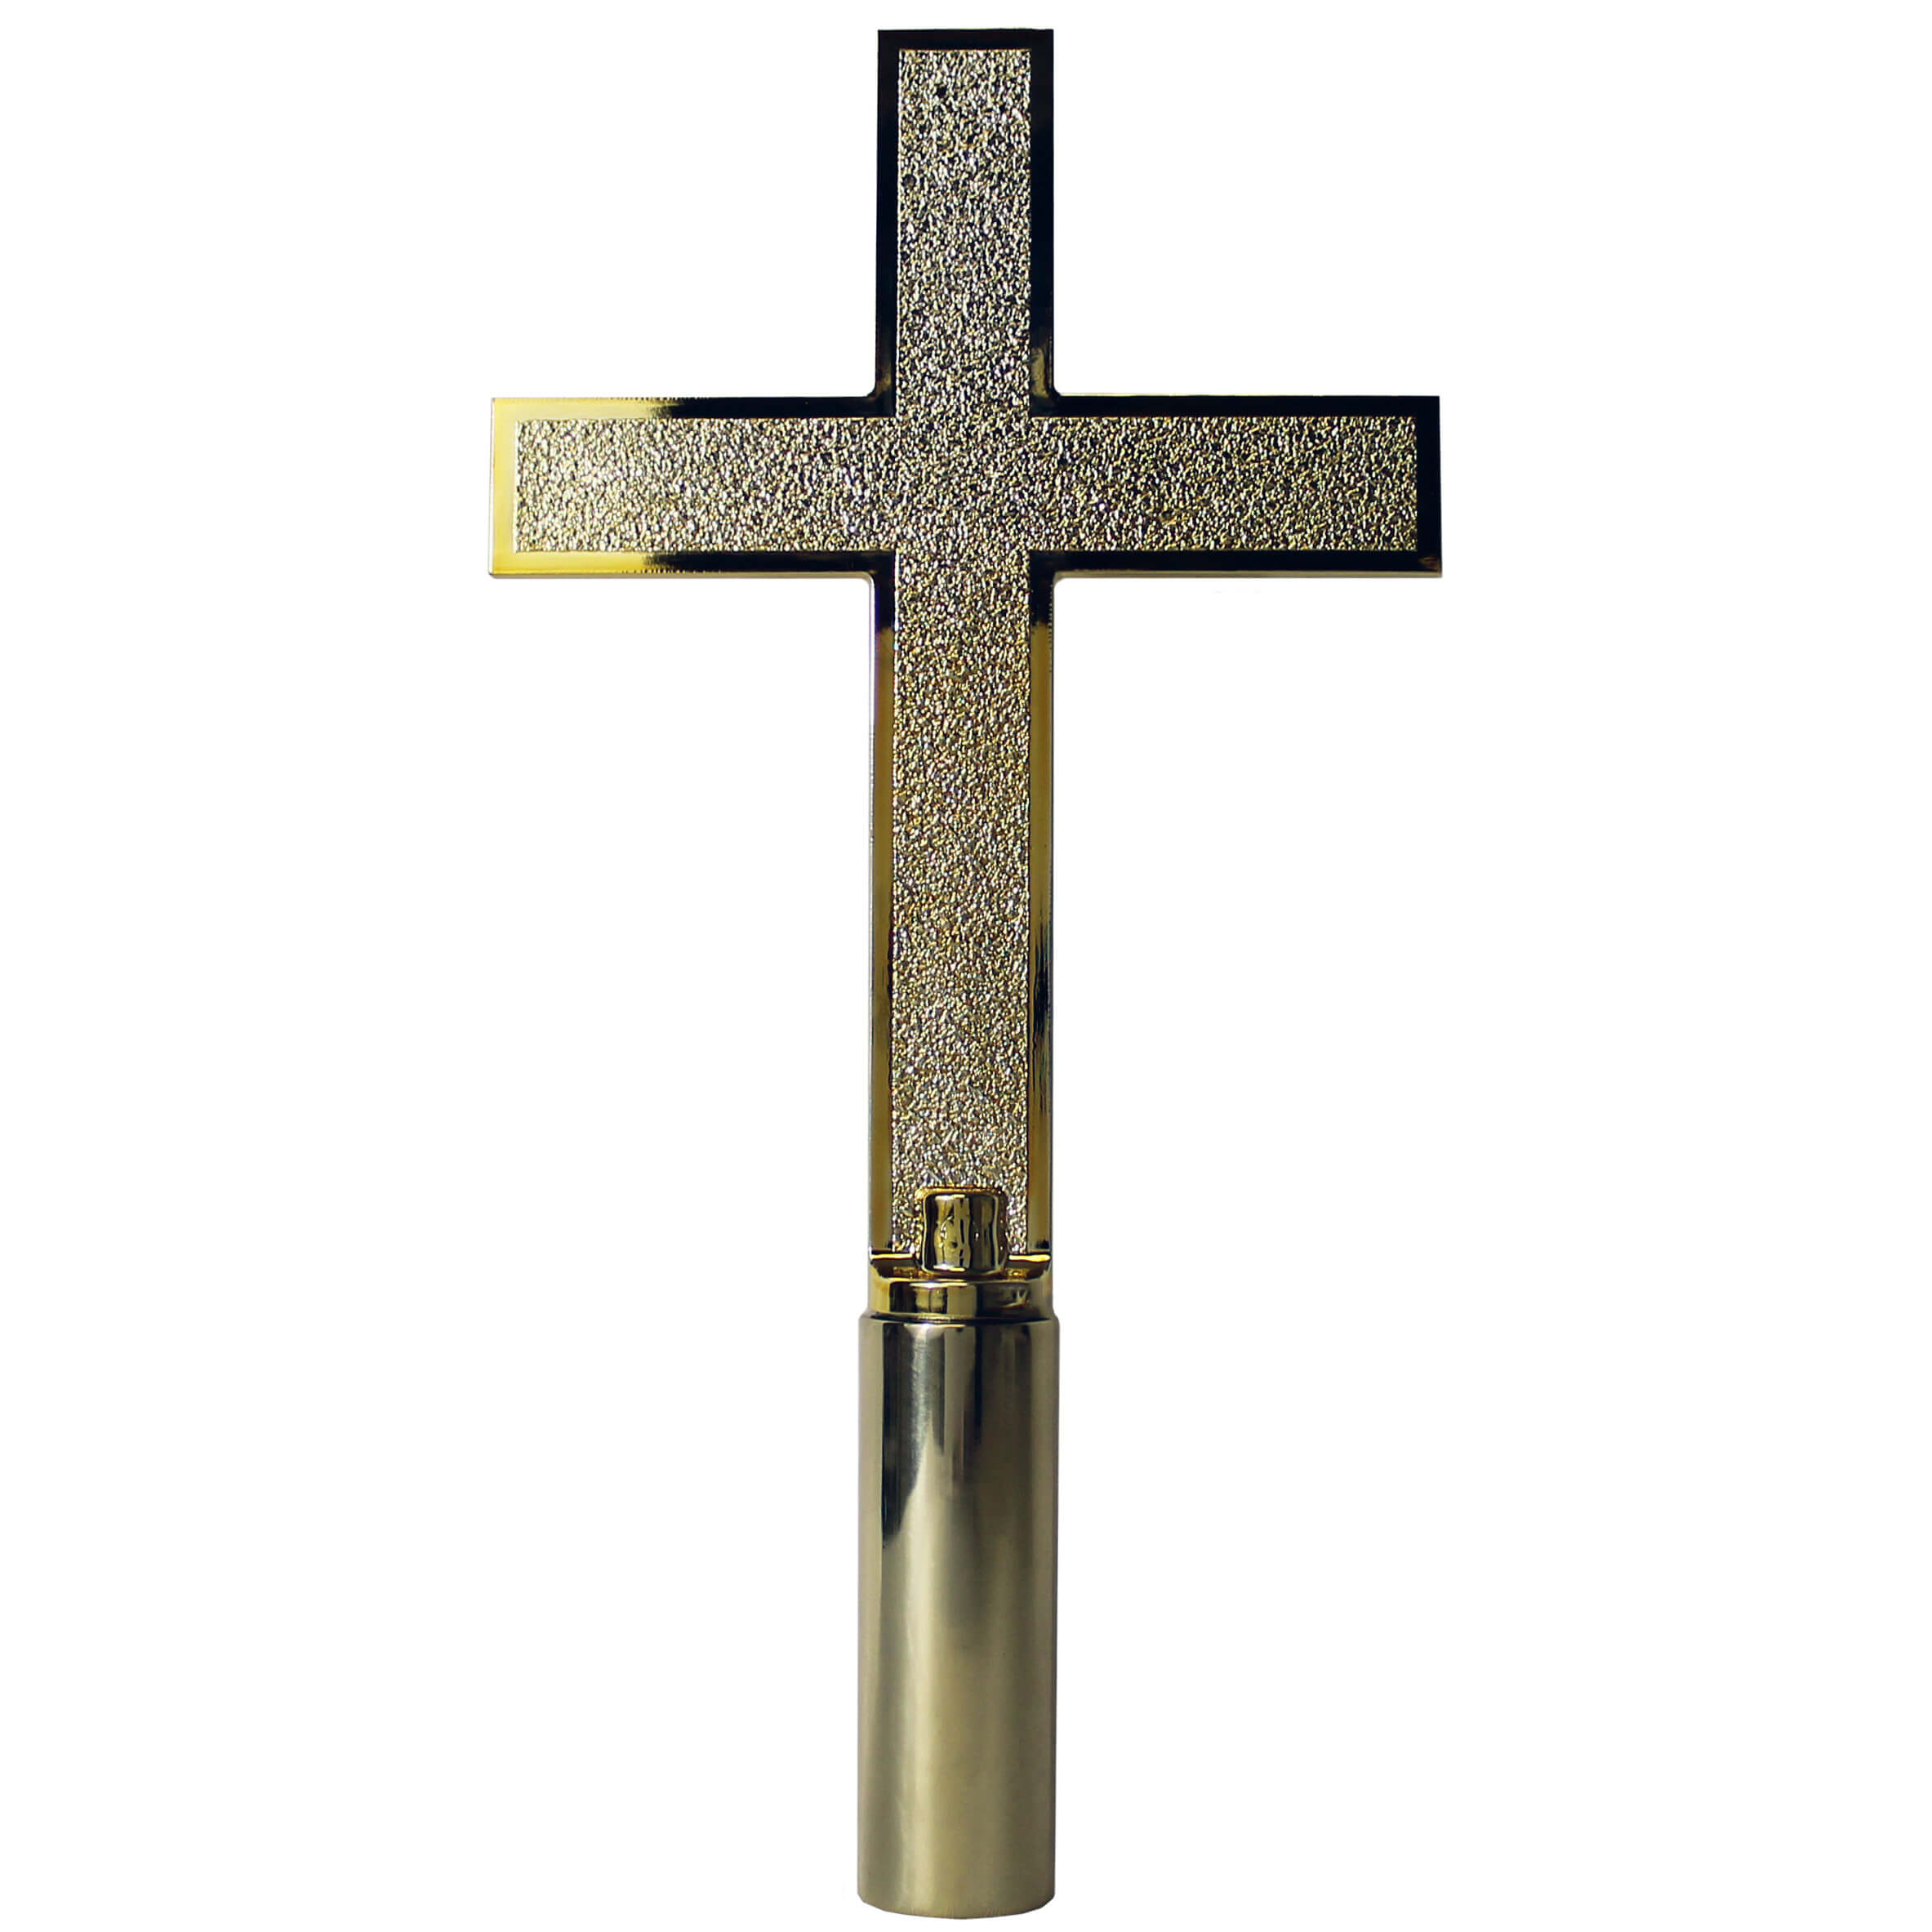 Classic Church Cross Ornament with Ferrule